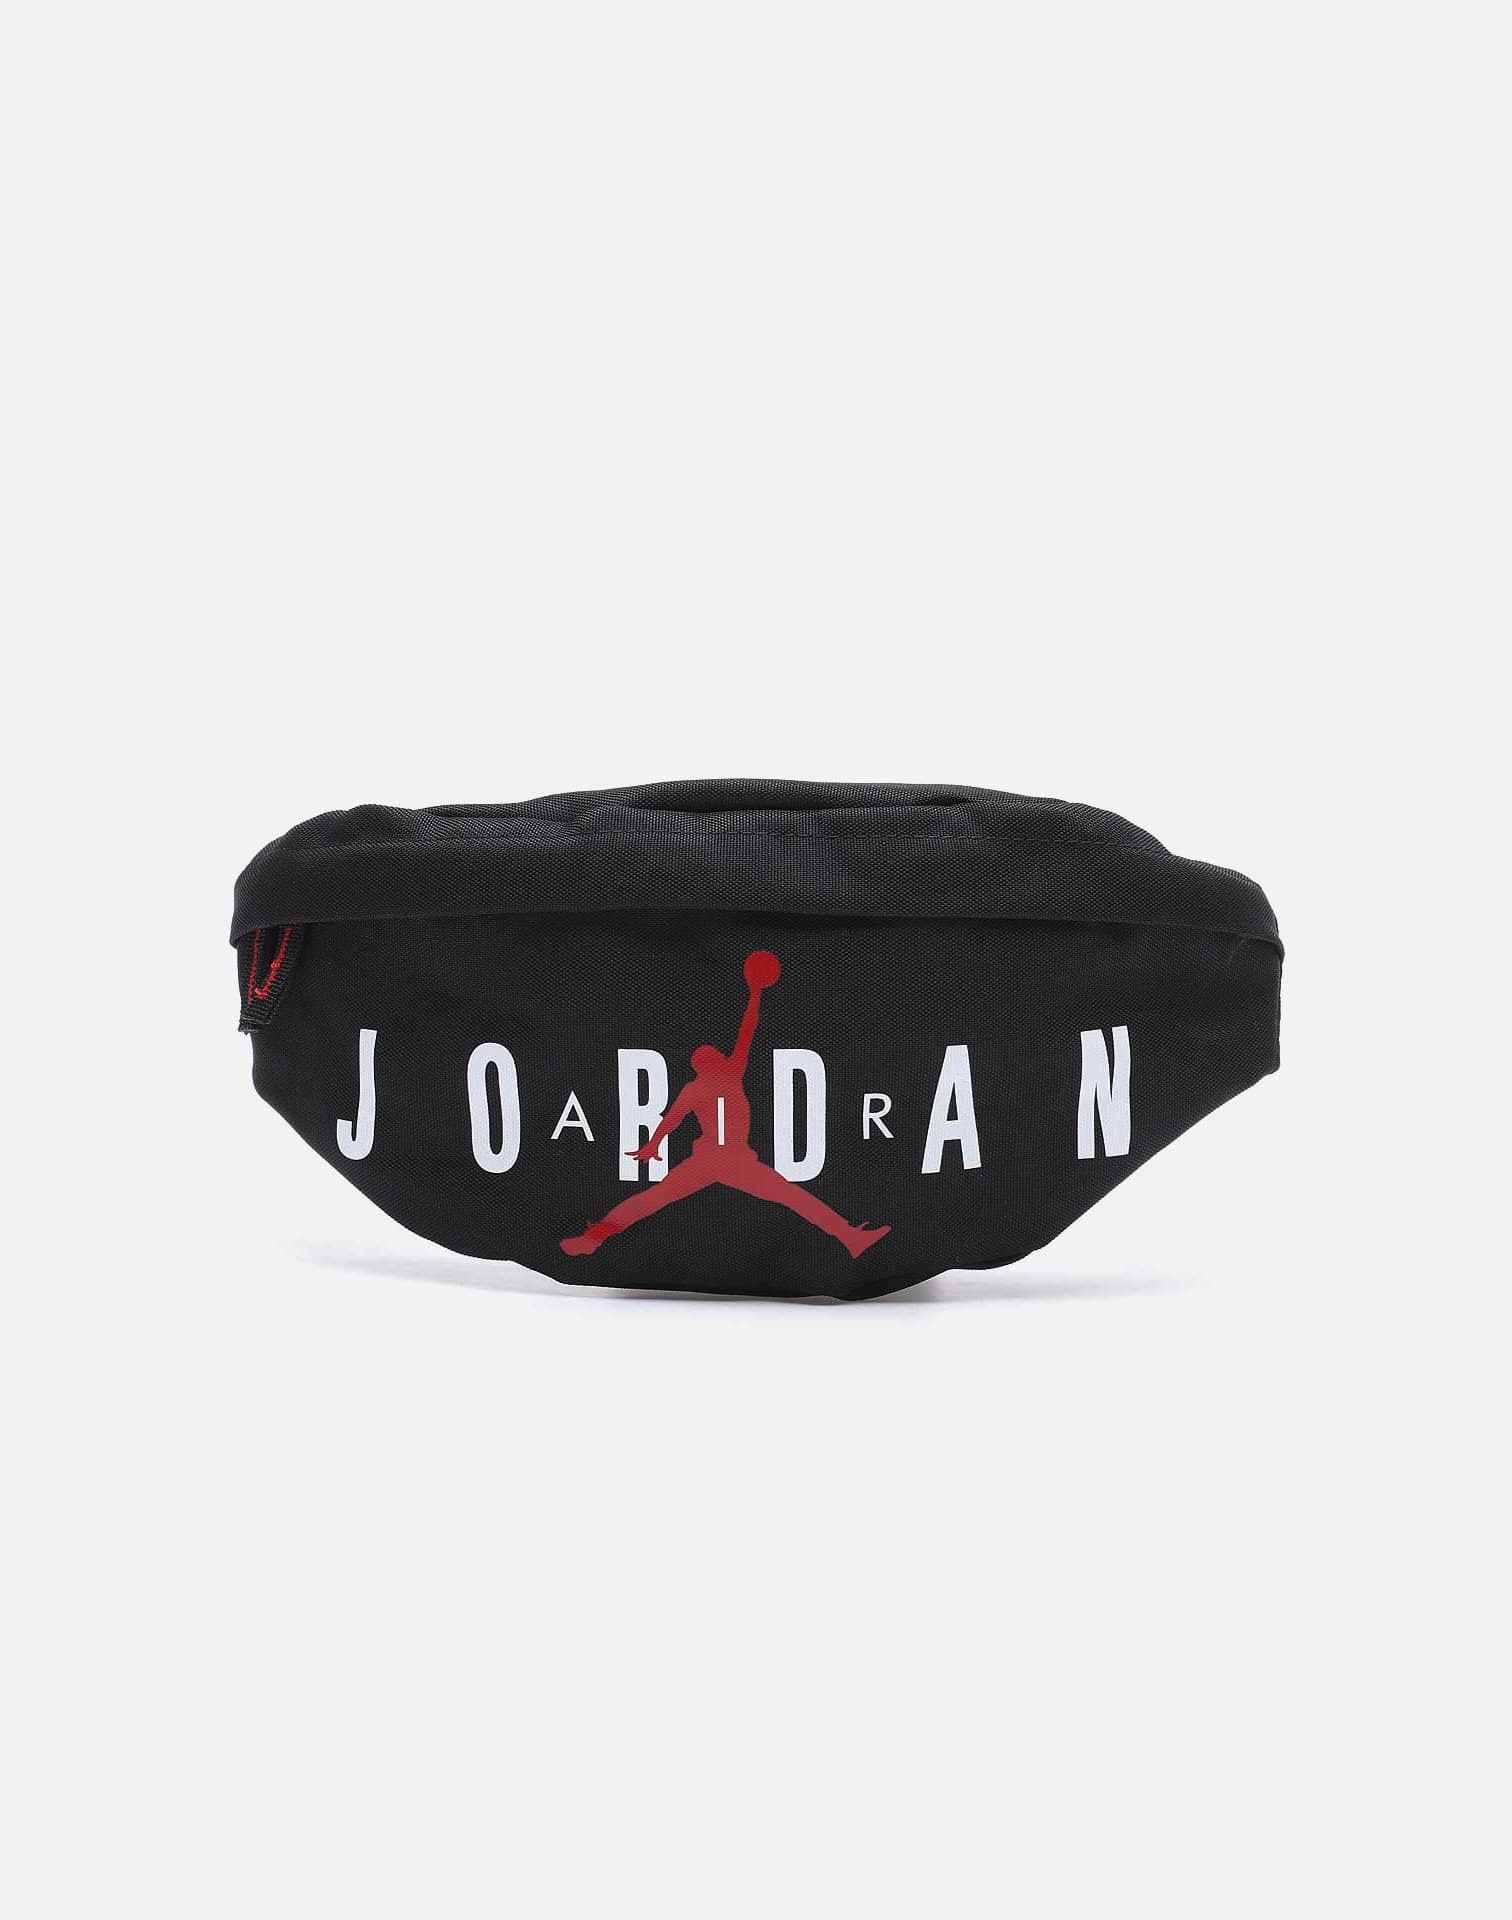 Jordan Air Jordan Bag – DTLR